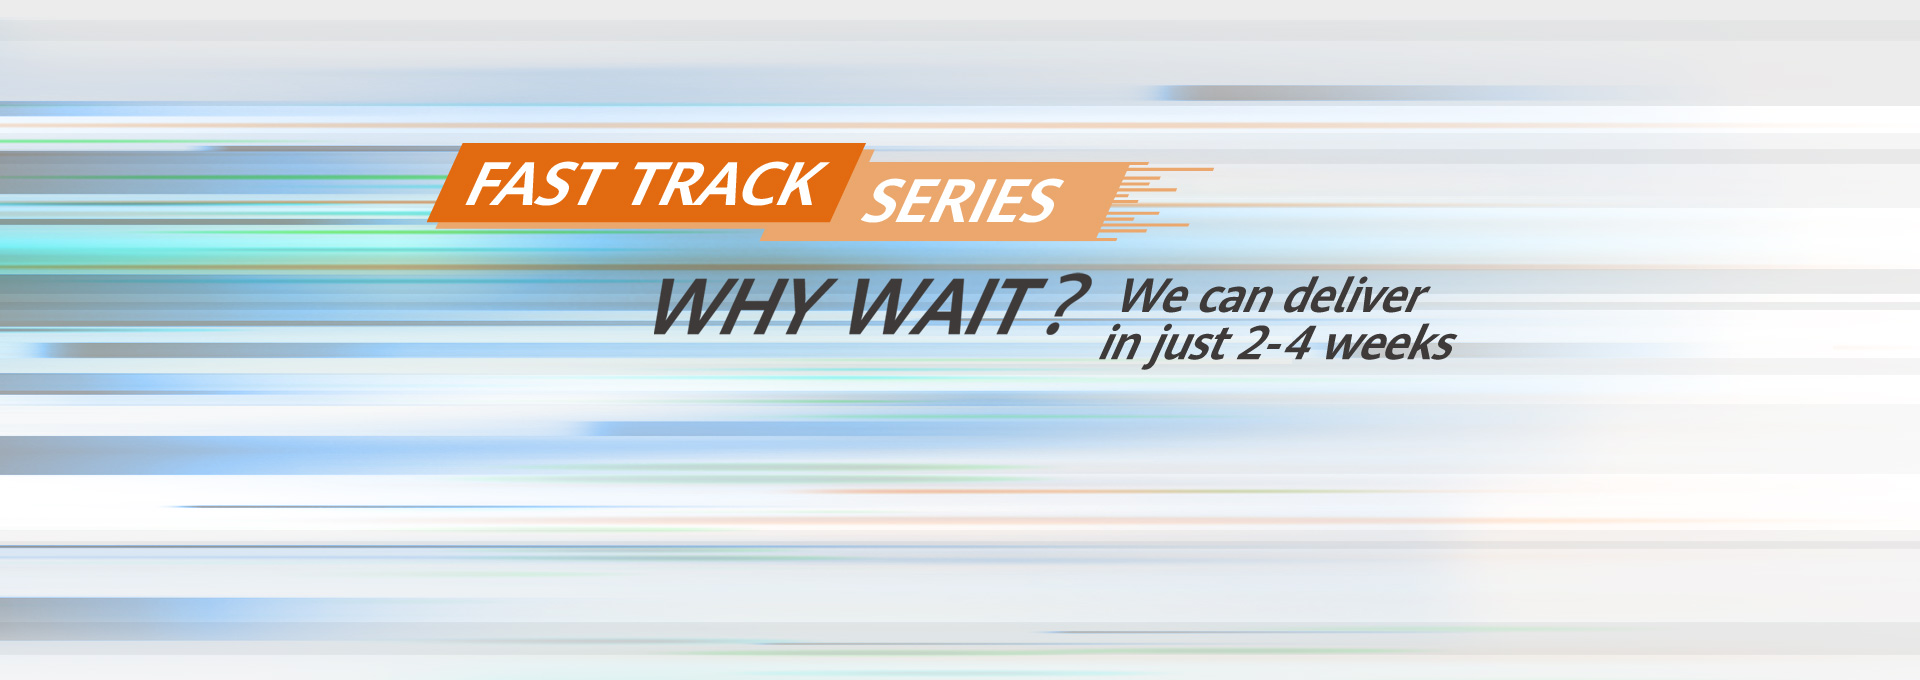 KV Fast Track Series resized v2